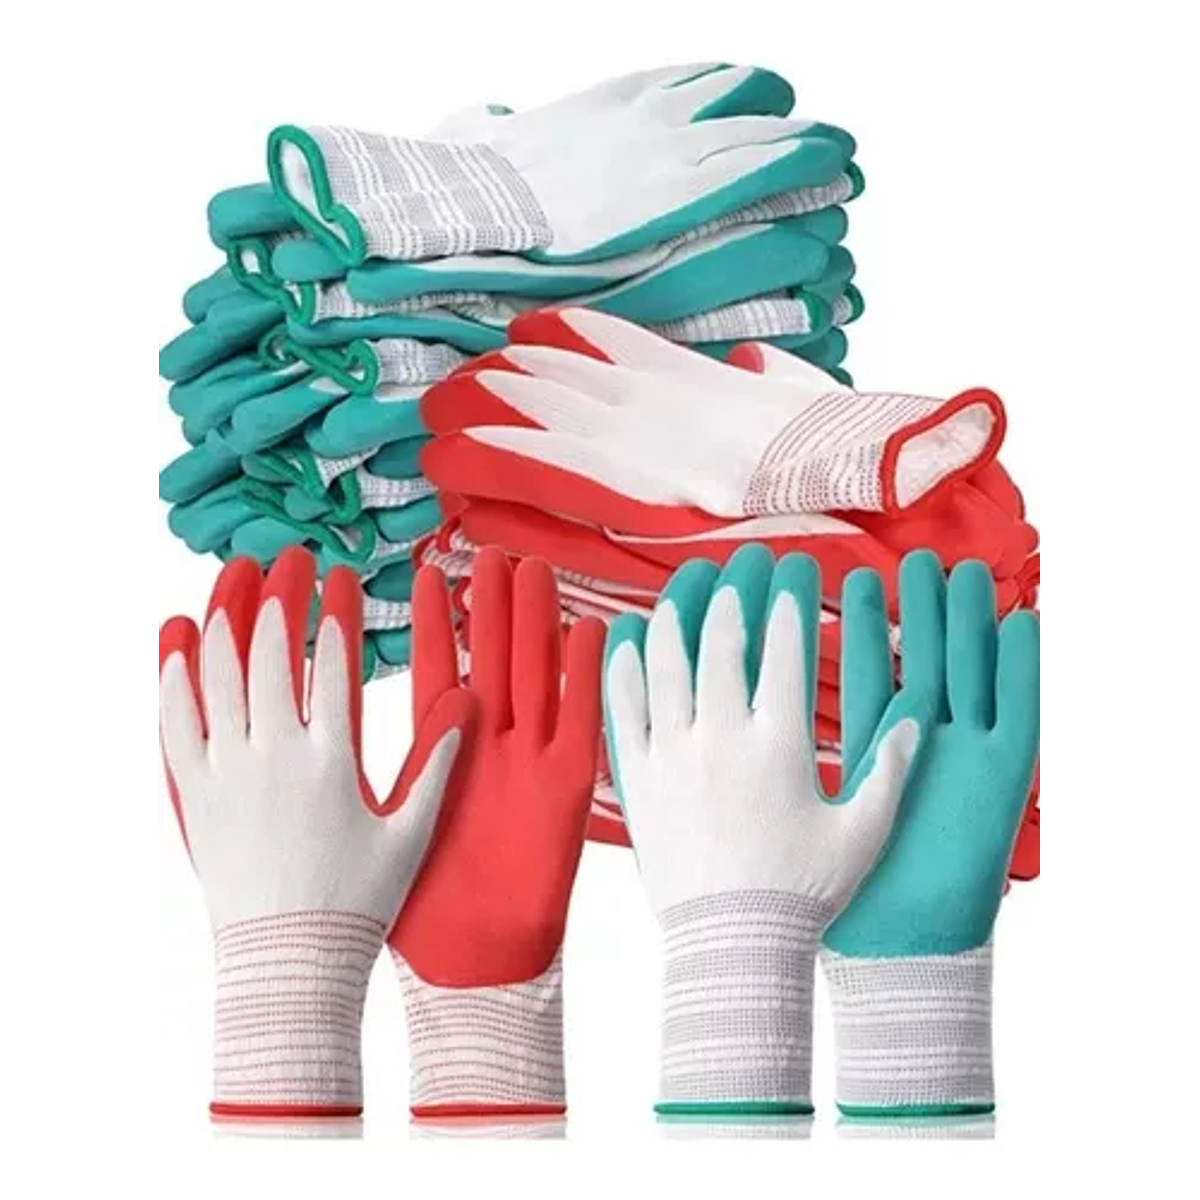 guantes de jardineria mujer – Compra guantes de jardineria mujer con envío  gratis en AliExpress version